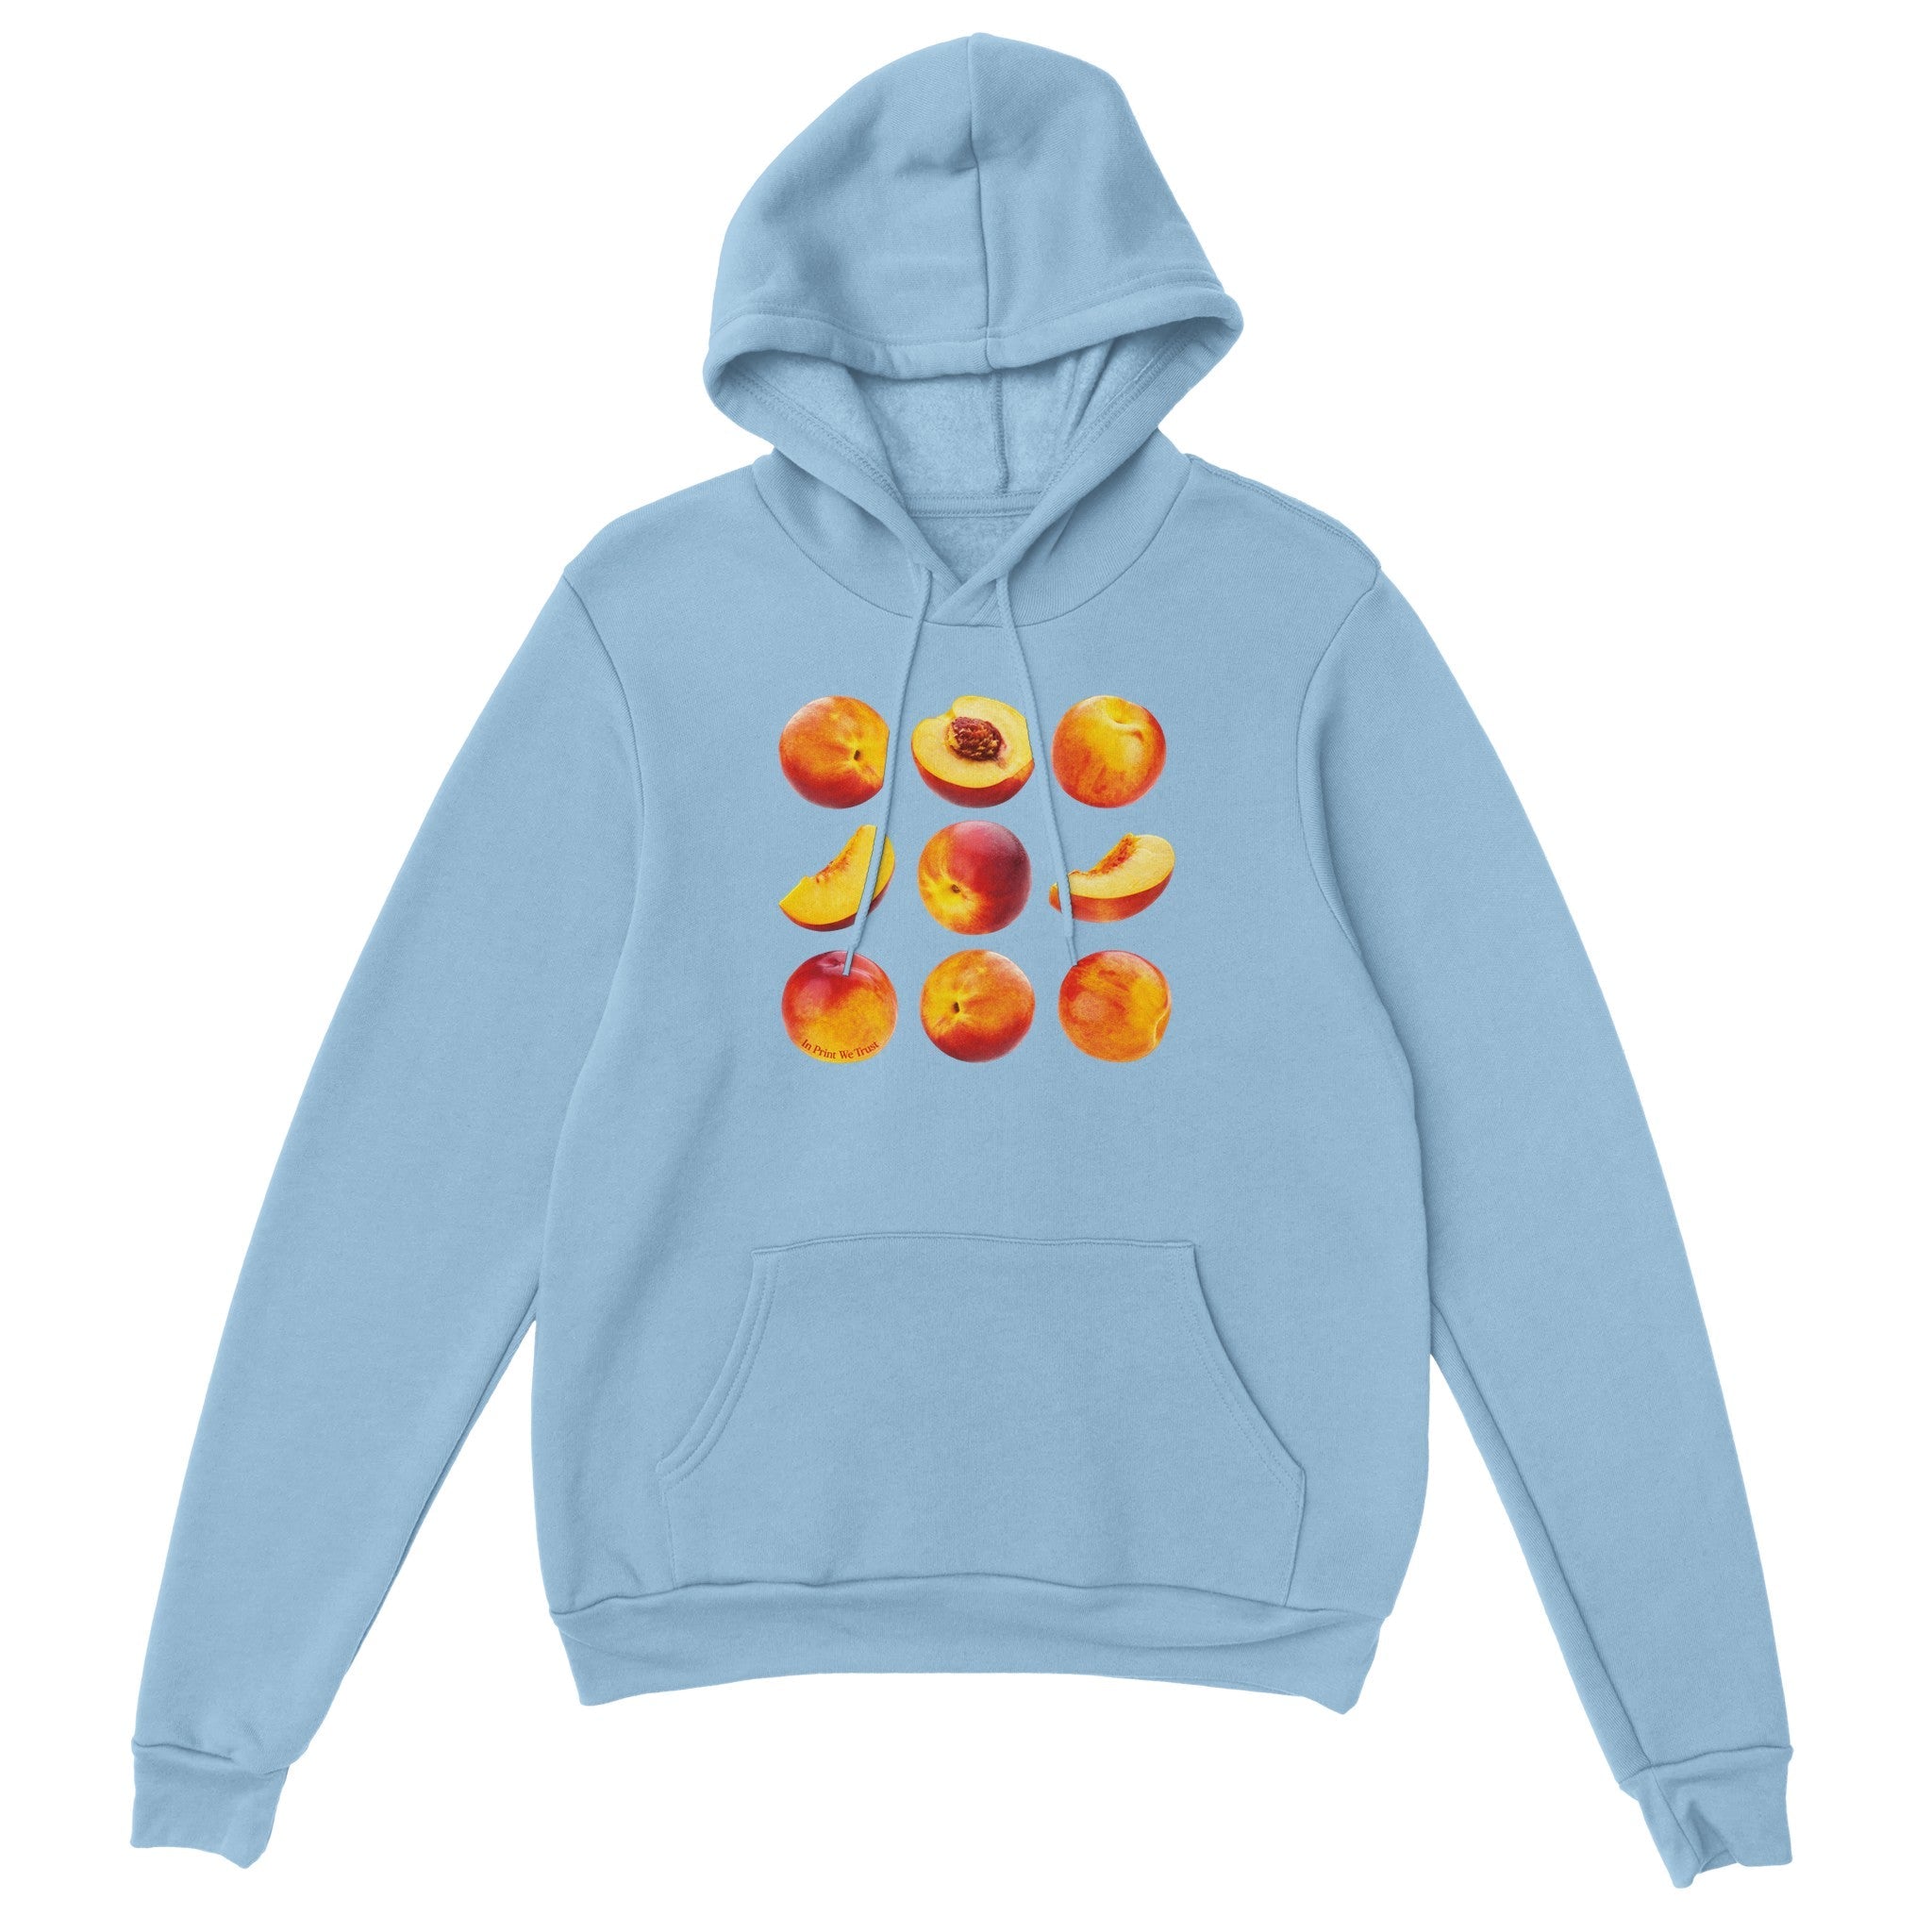 'Just Peachy' hoodie - In Print We Trust